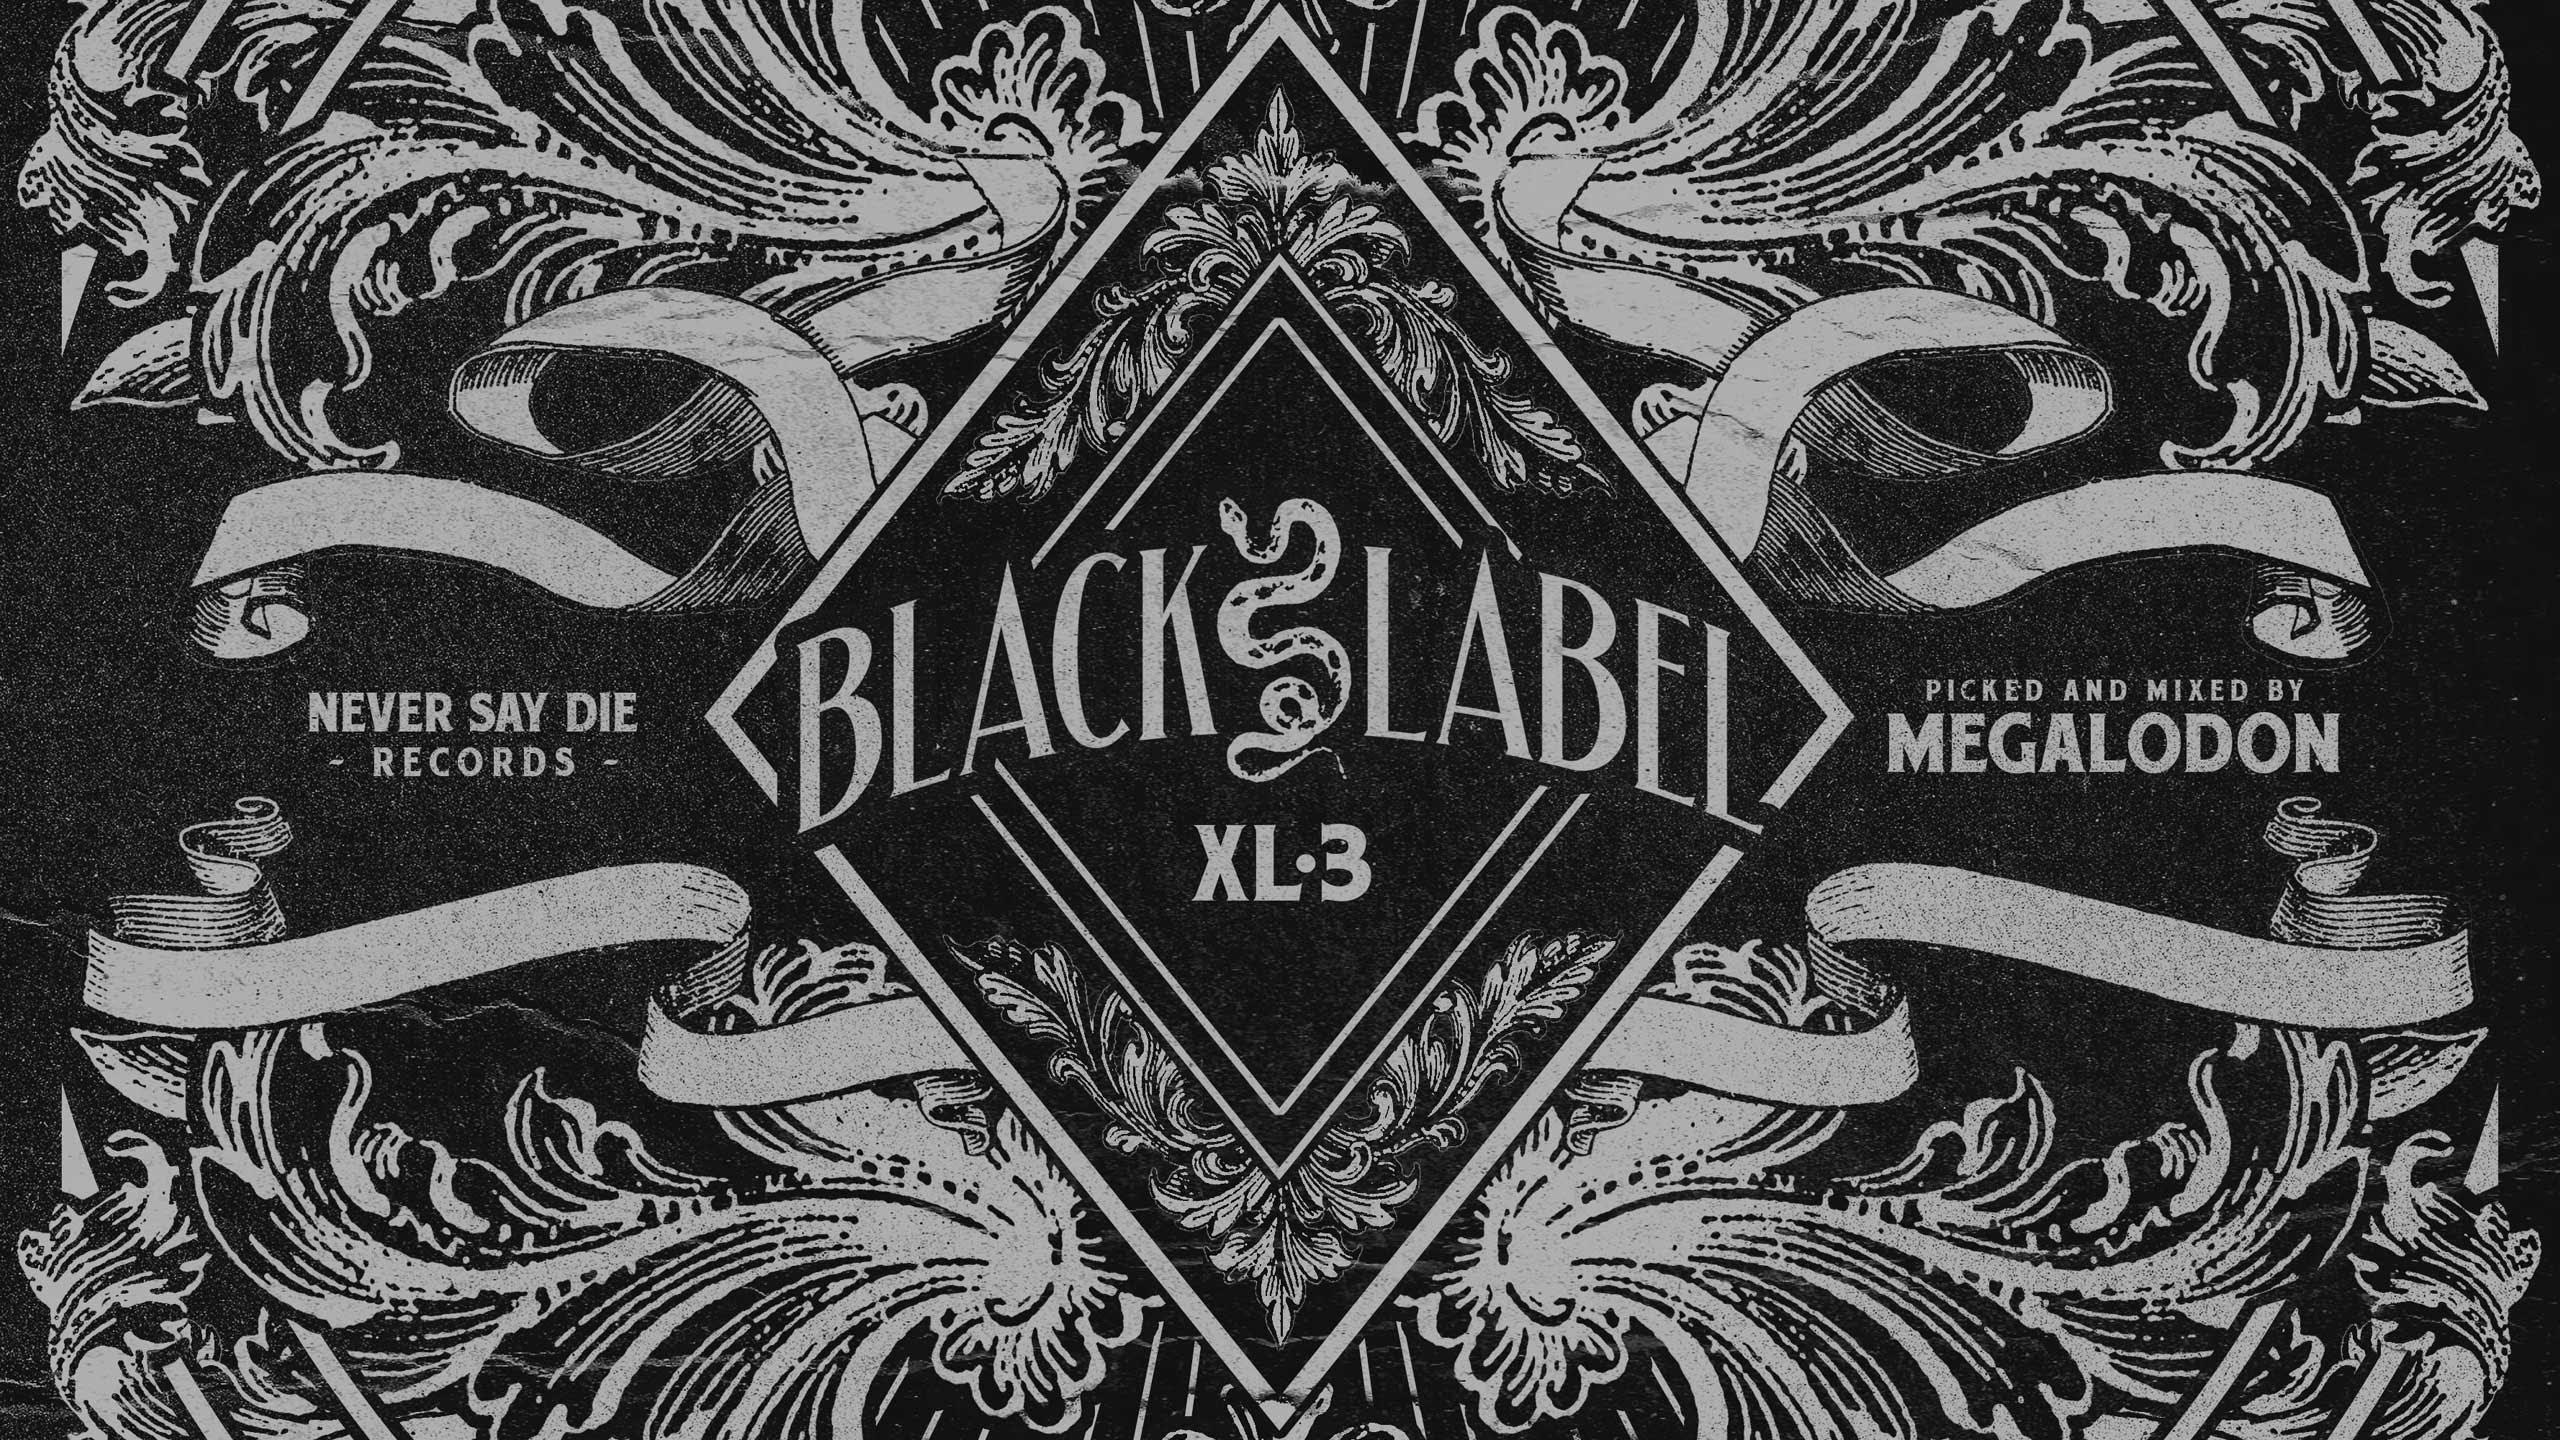 Black Label XL 3 (Teaser)